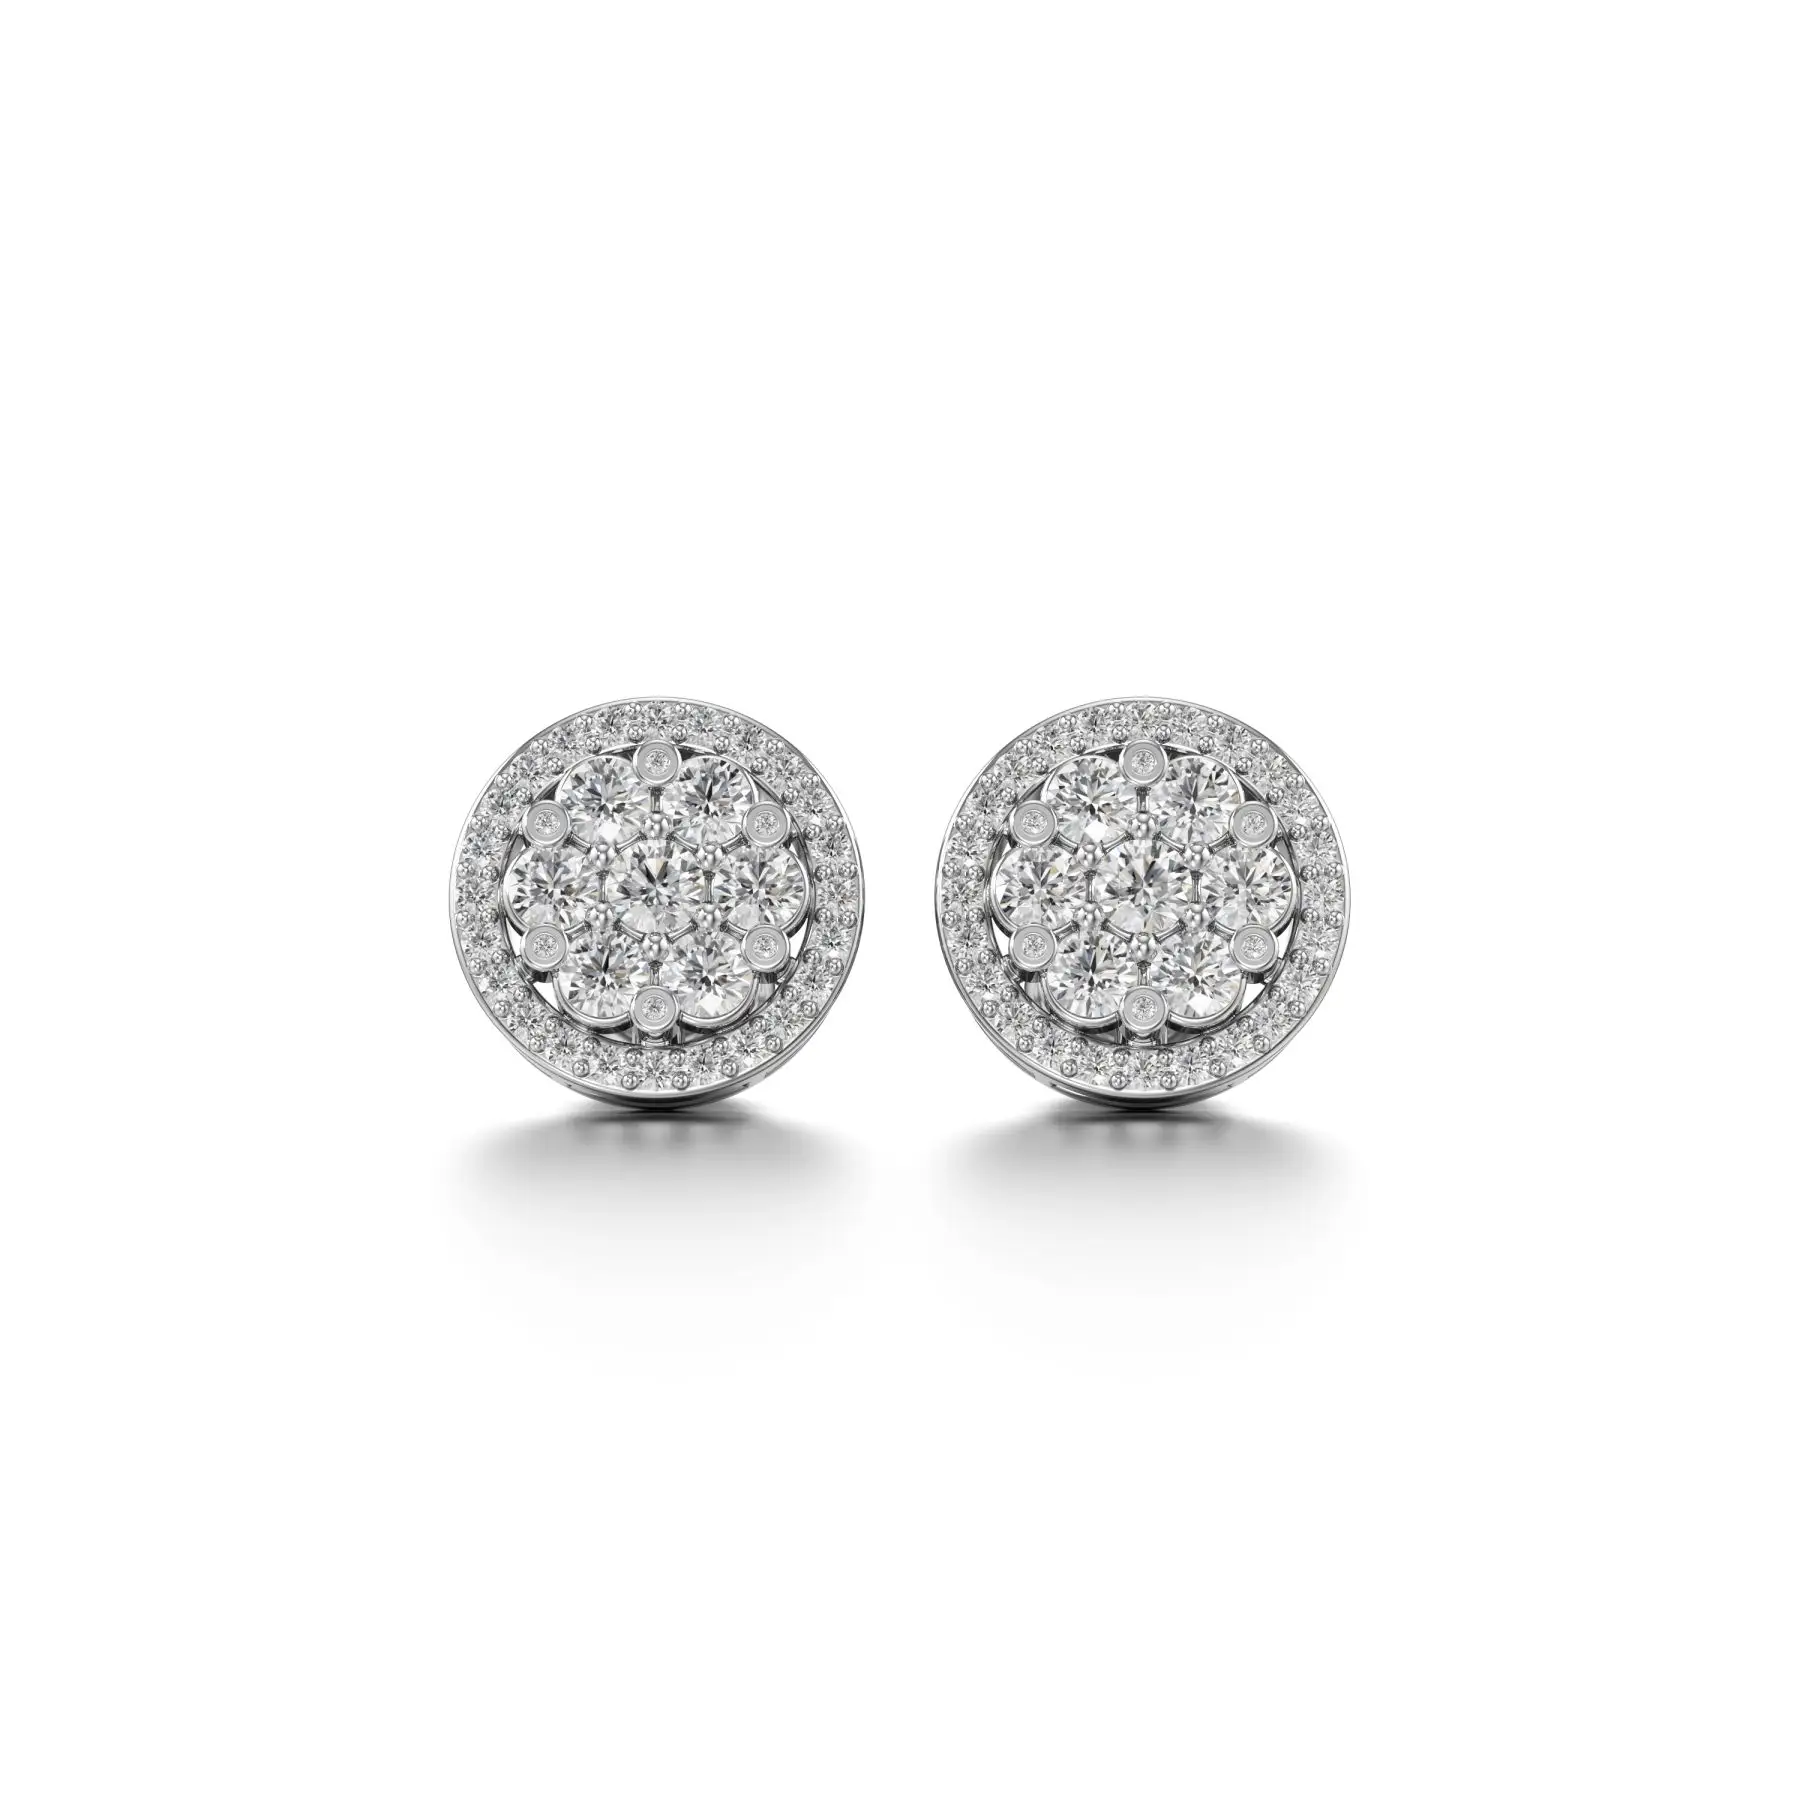 Glitzy Cluster Diamond Earrings in White 10k Gold